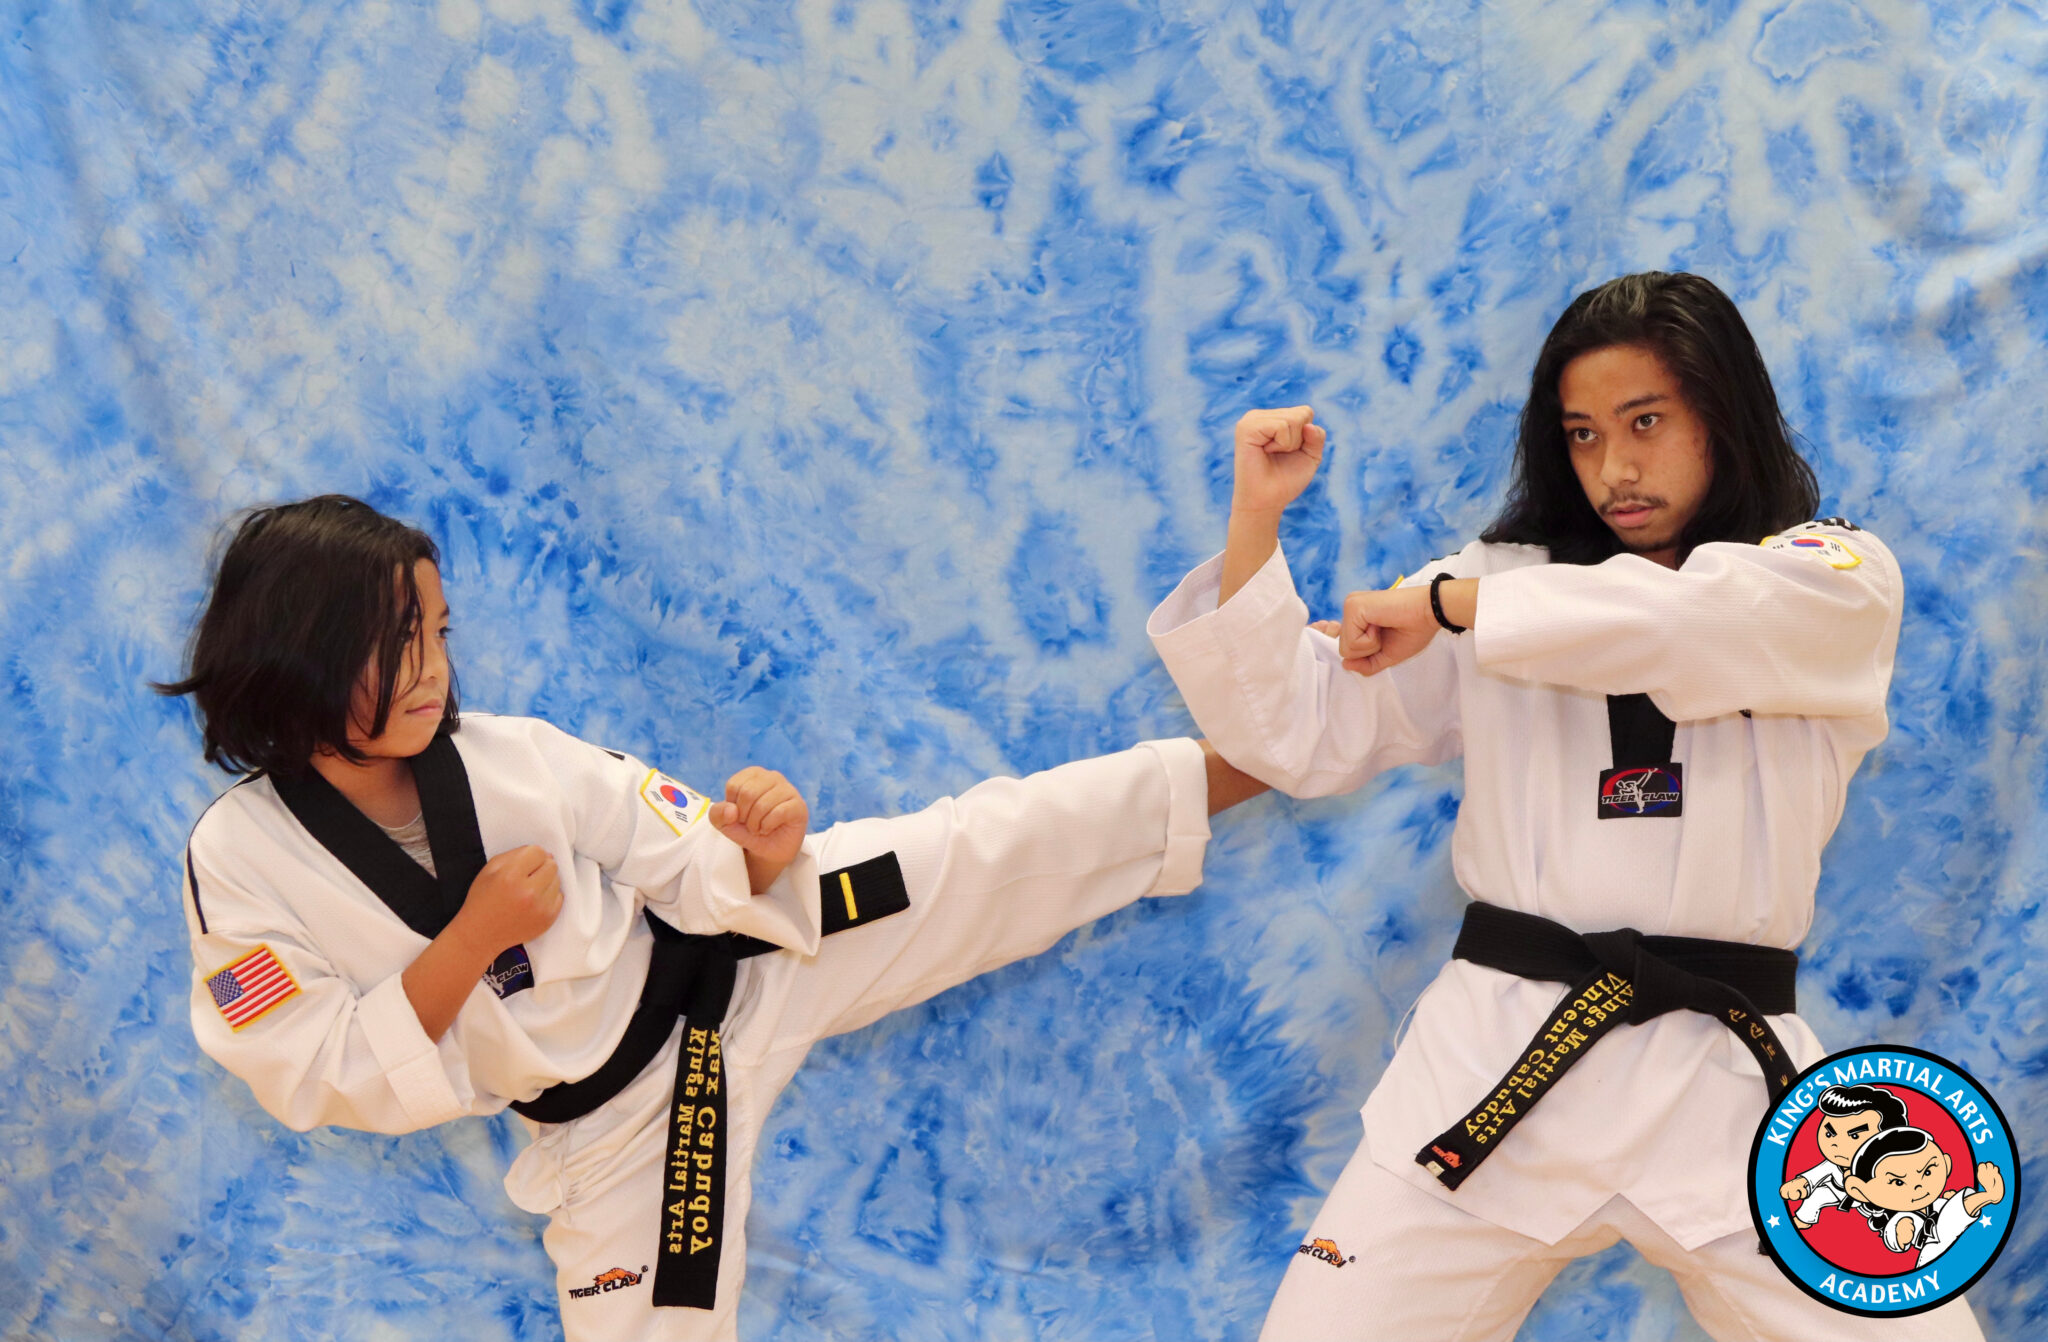 King's Martial Arts Academy Black Belt Martial Arts